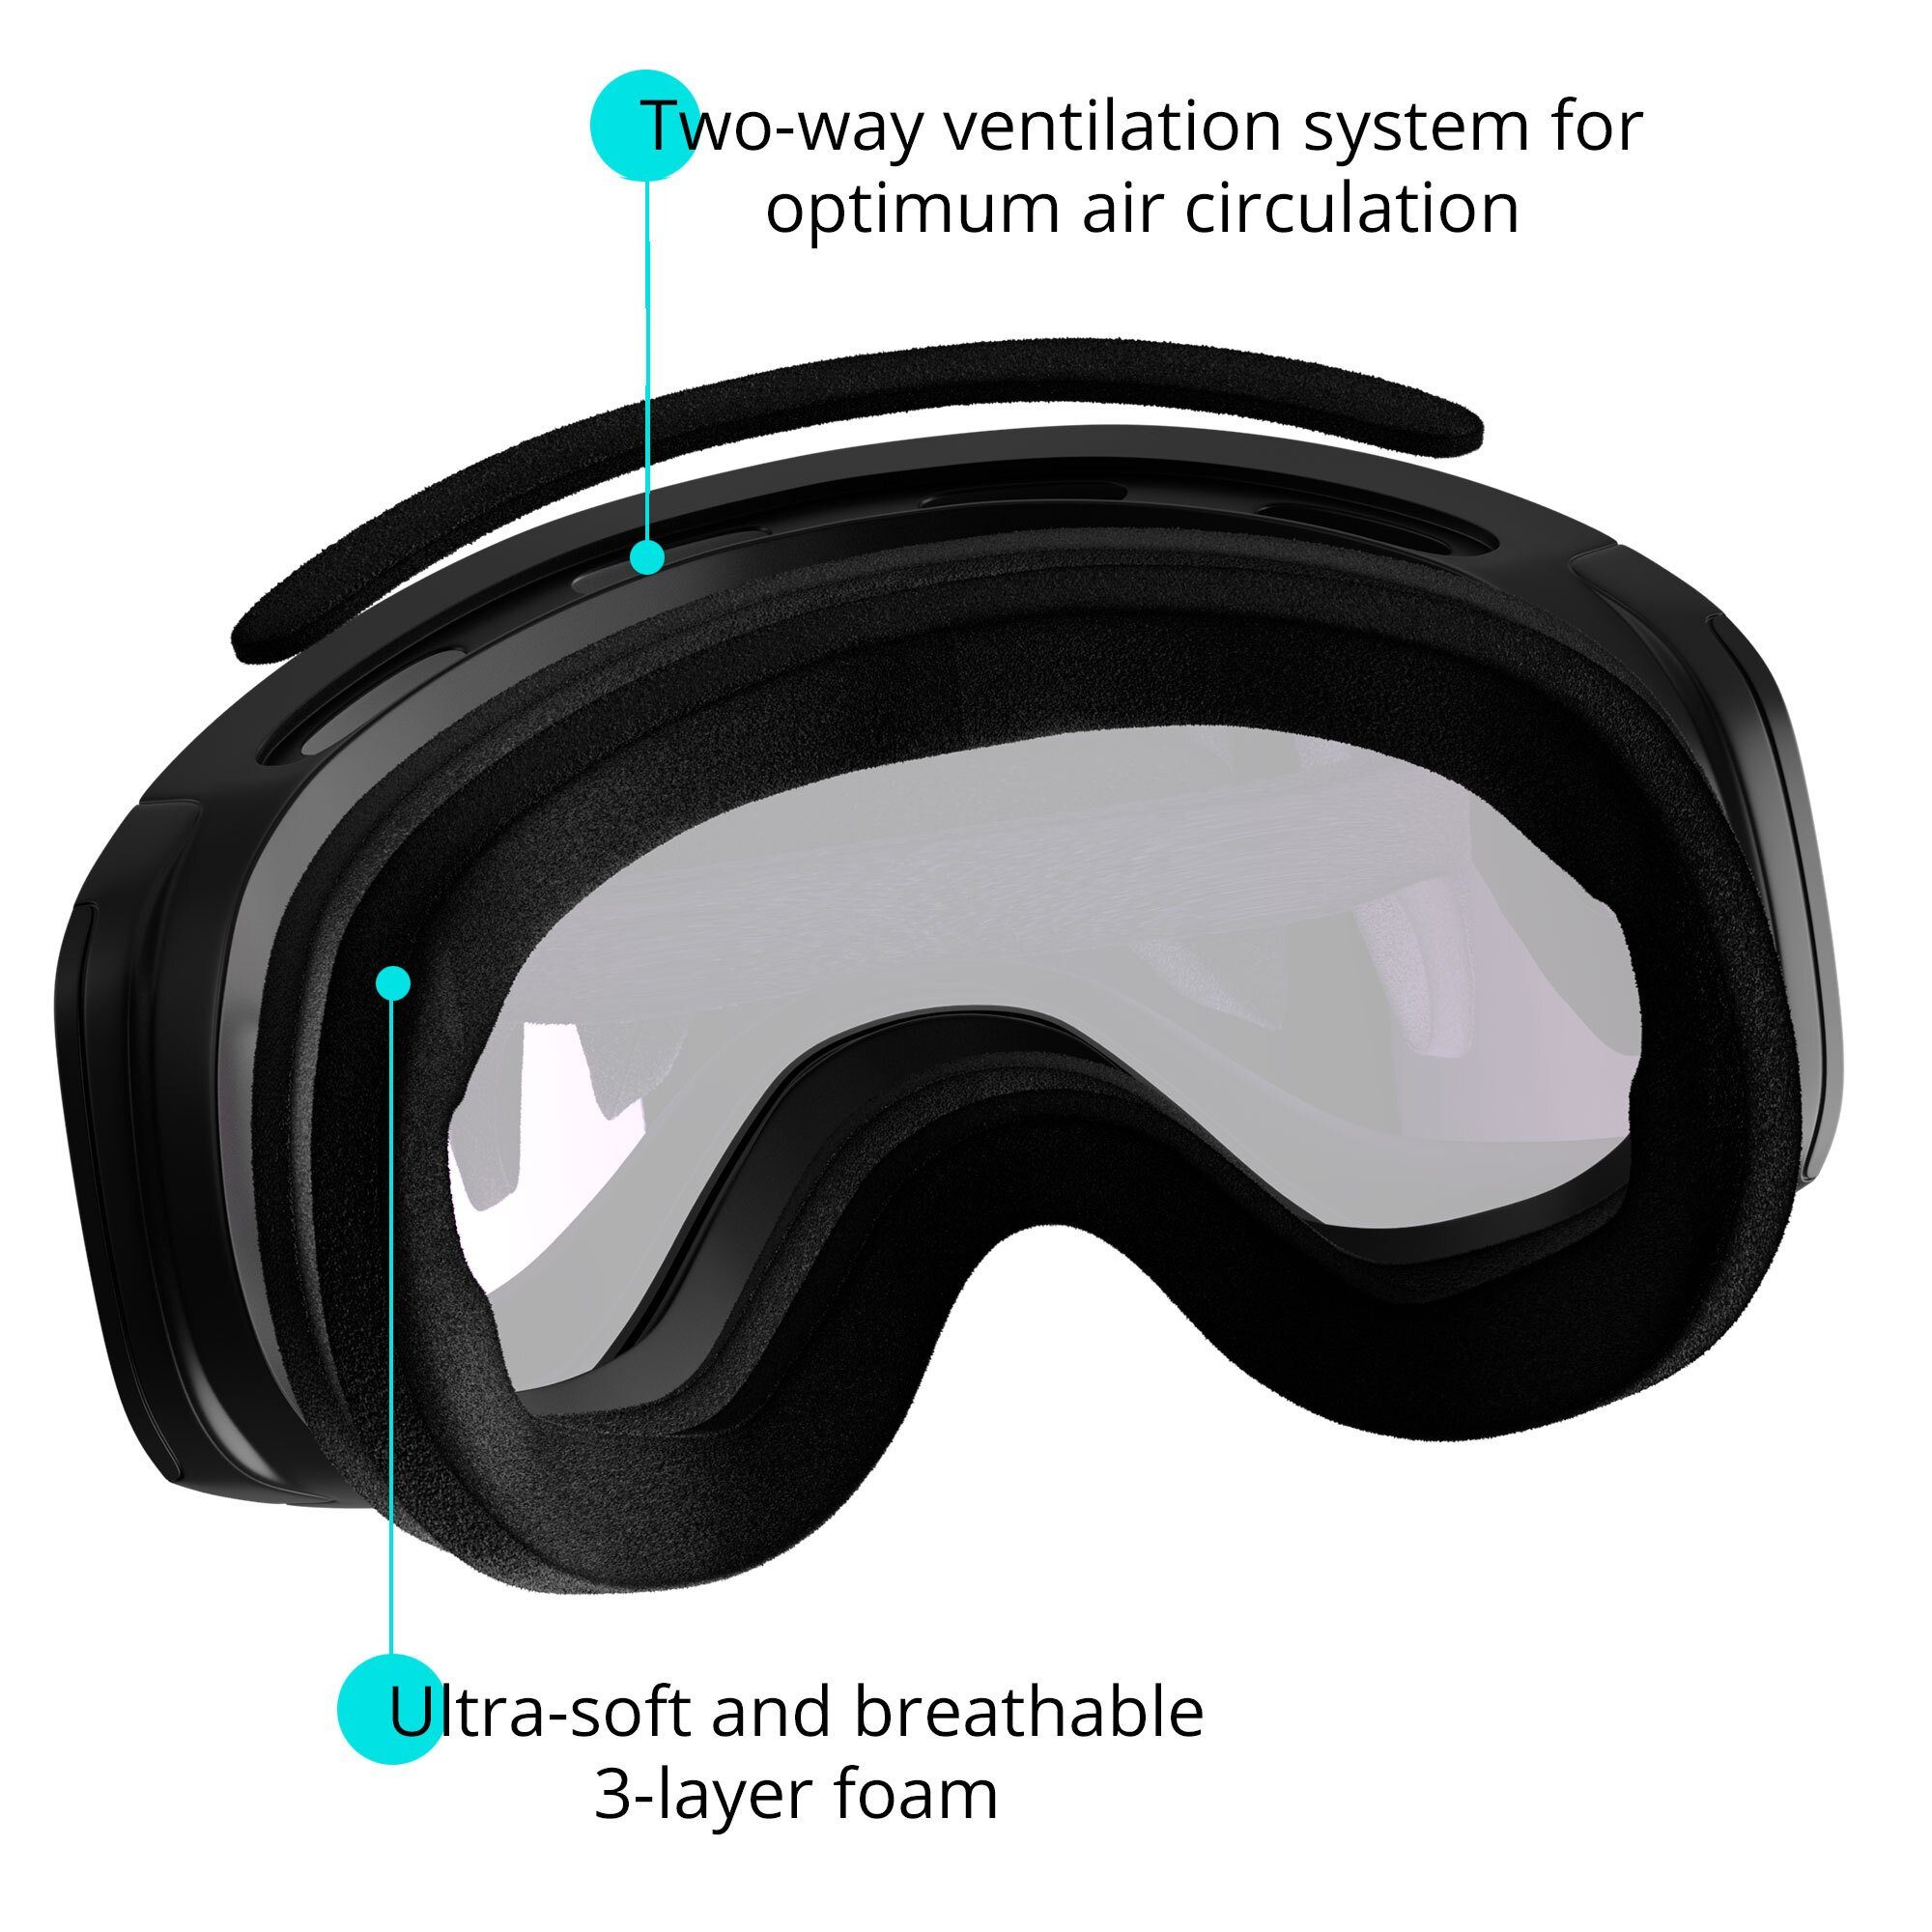 YEAZ für Skibrille APEX, silber/schwarz Gläser, Magnet-Wechsel-System